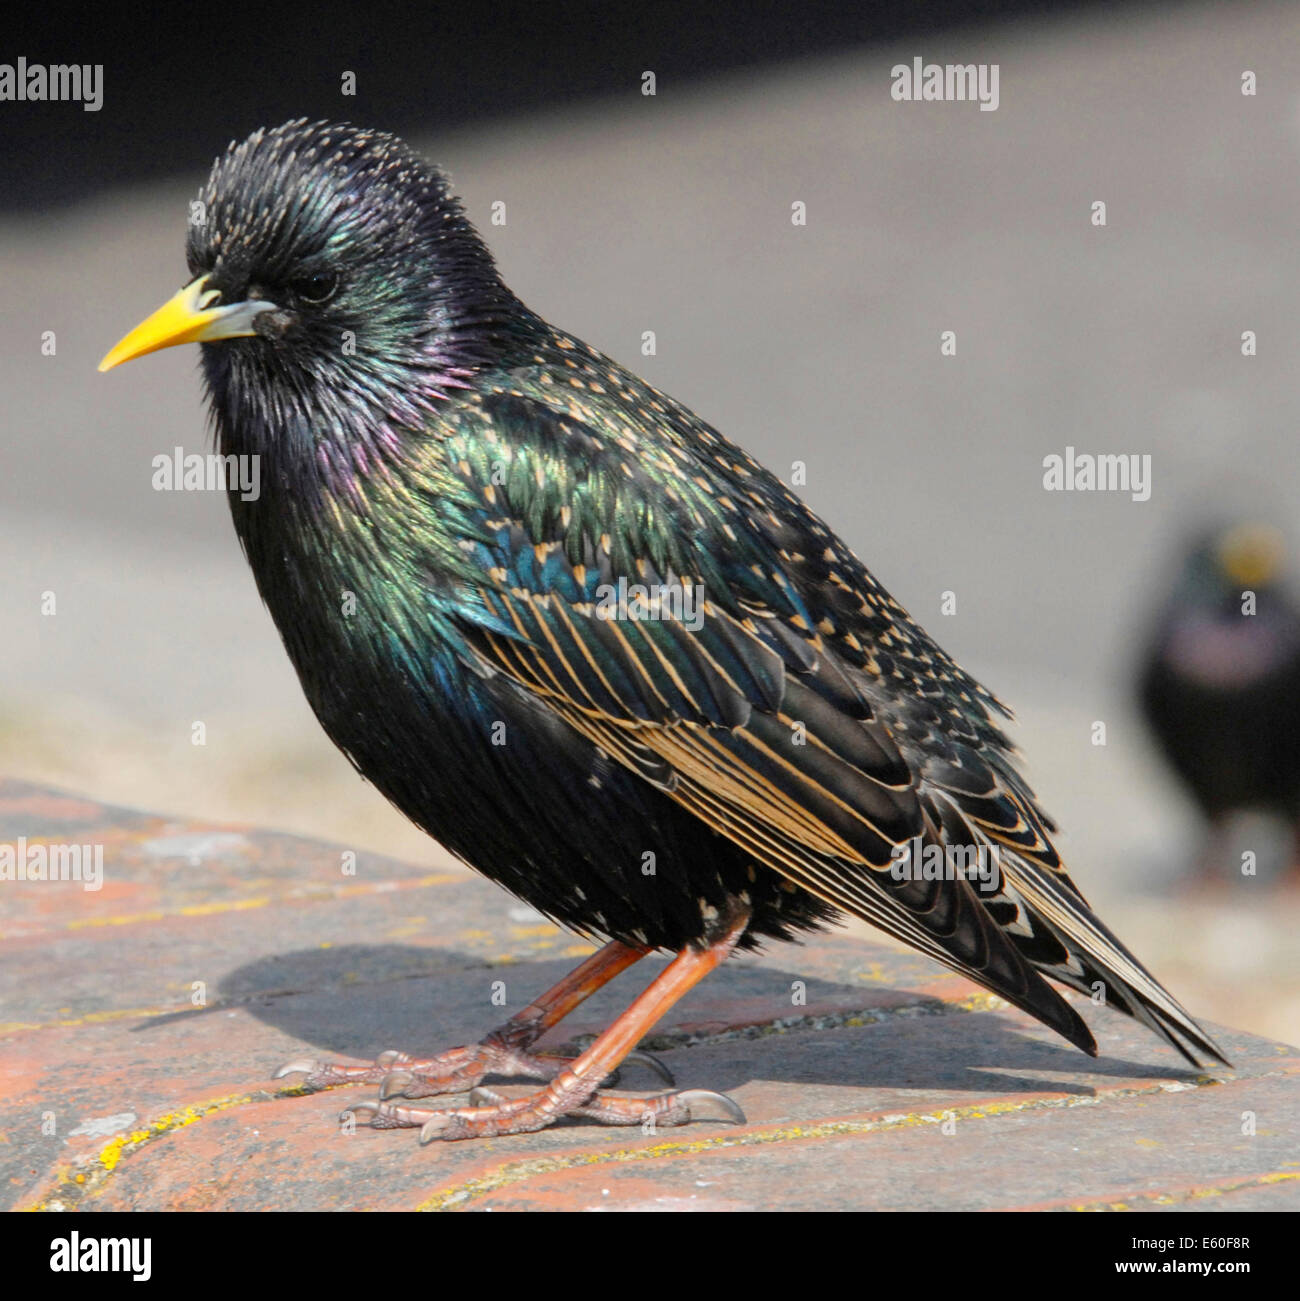 STARLING (Sturnus vulgaris vulgaris) bien amados UK bird ahora en decadencia - este es un macho adulto Foto de stock